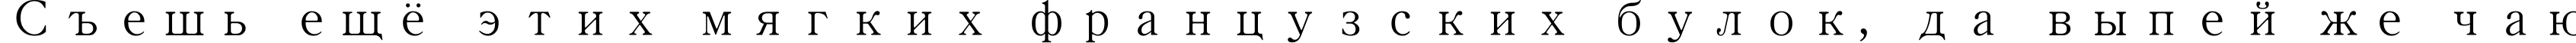 Пример написания шрифтом MS Mincho текста на русском